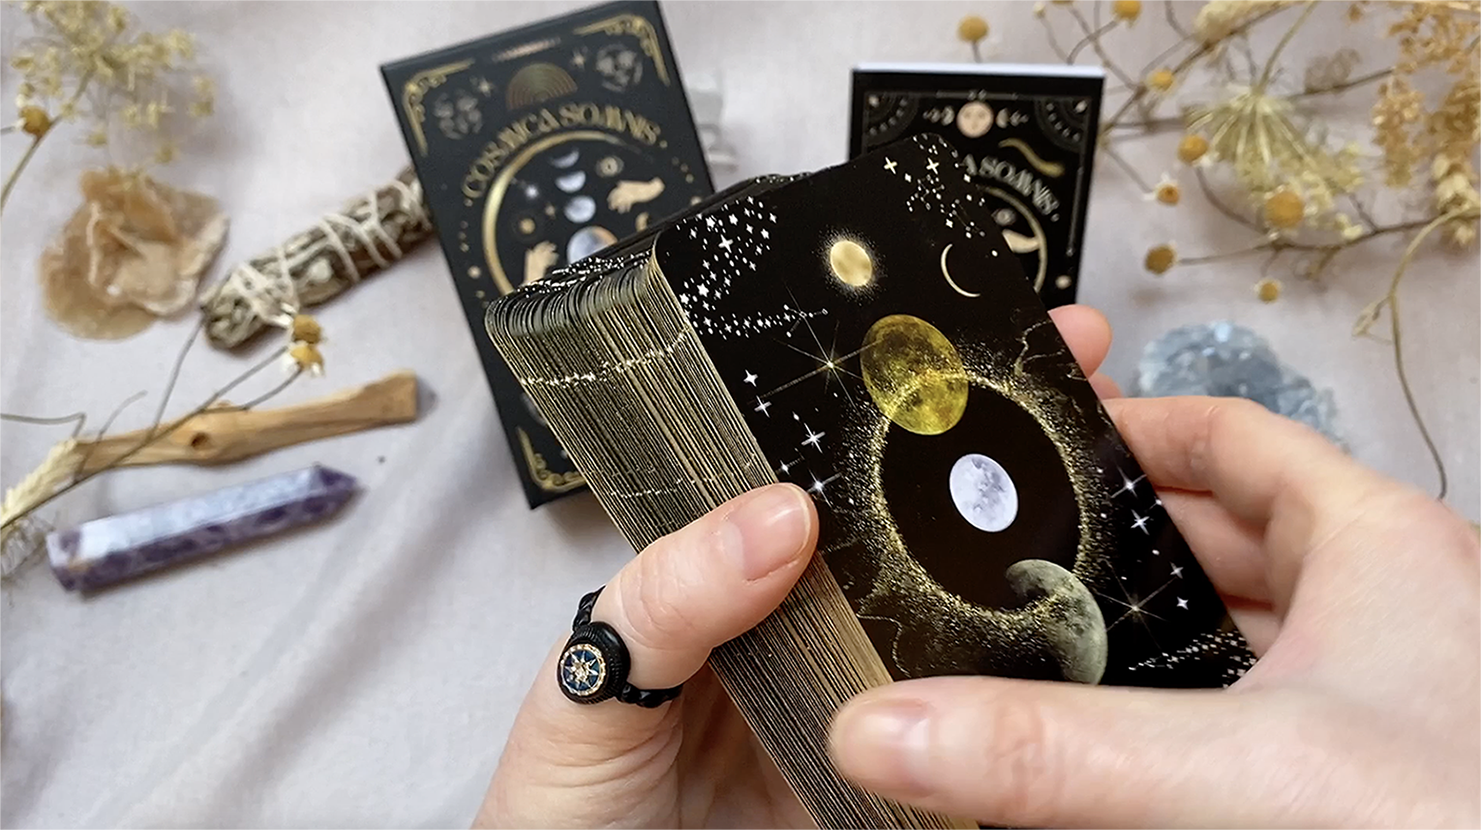 Load video: cosmica somnis tarot deck